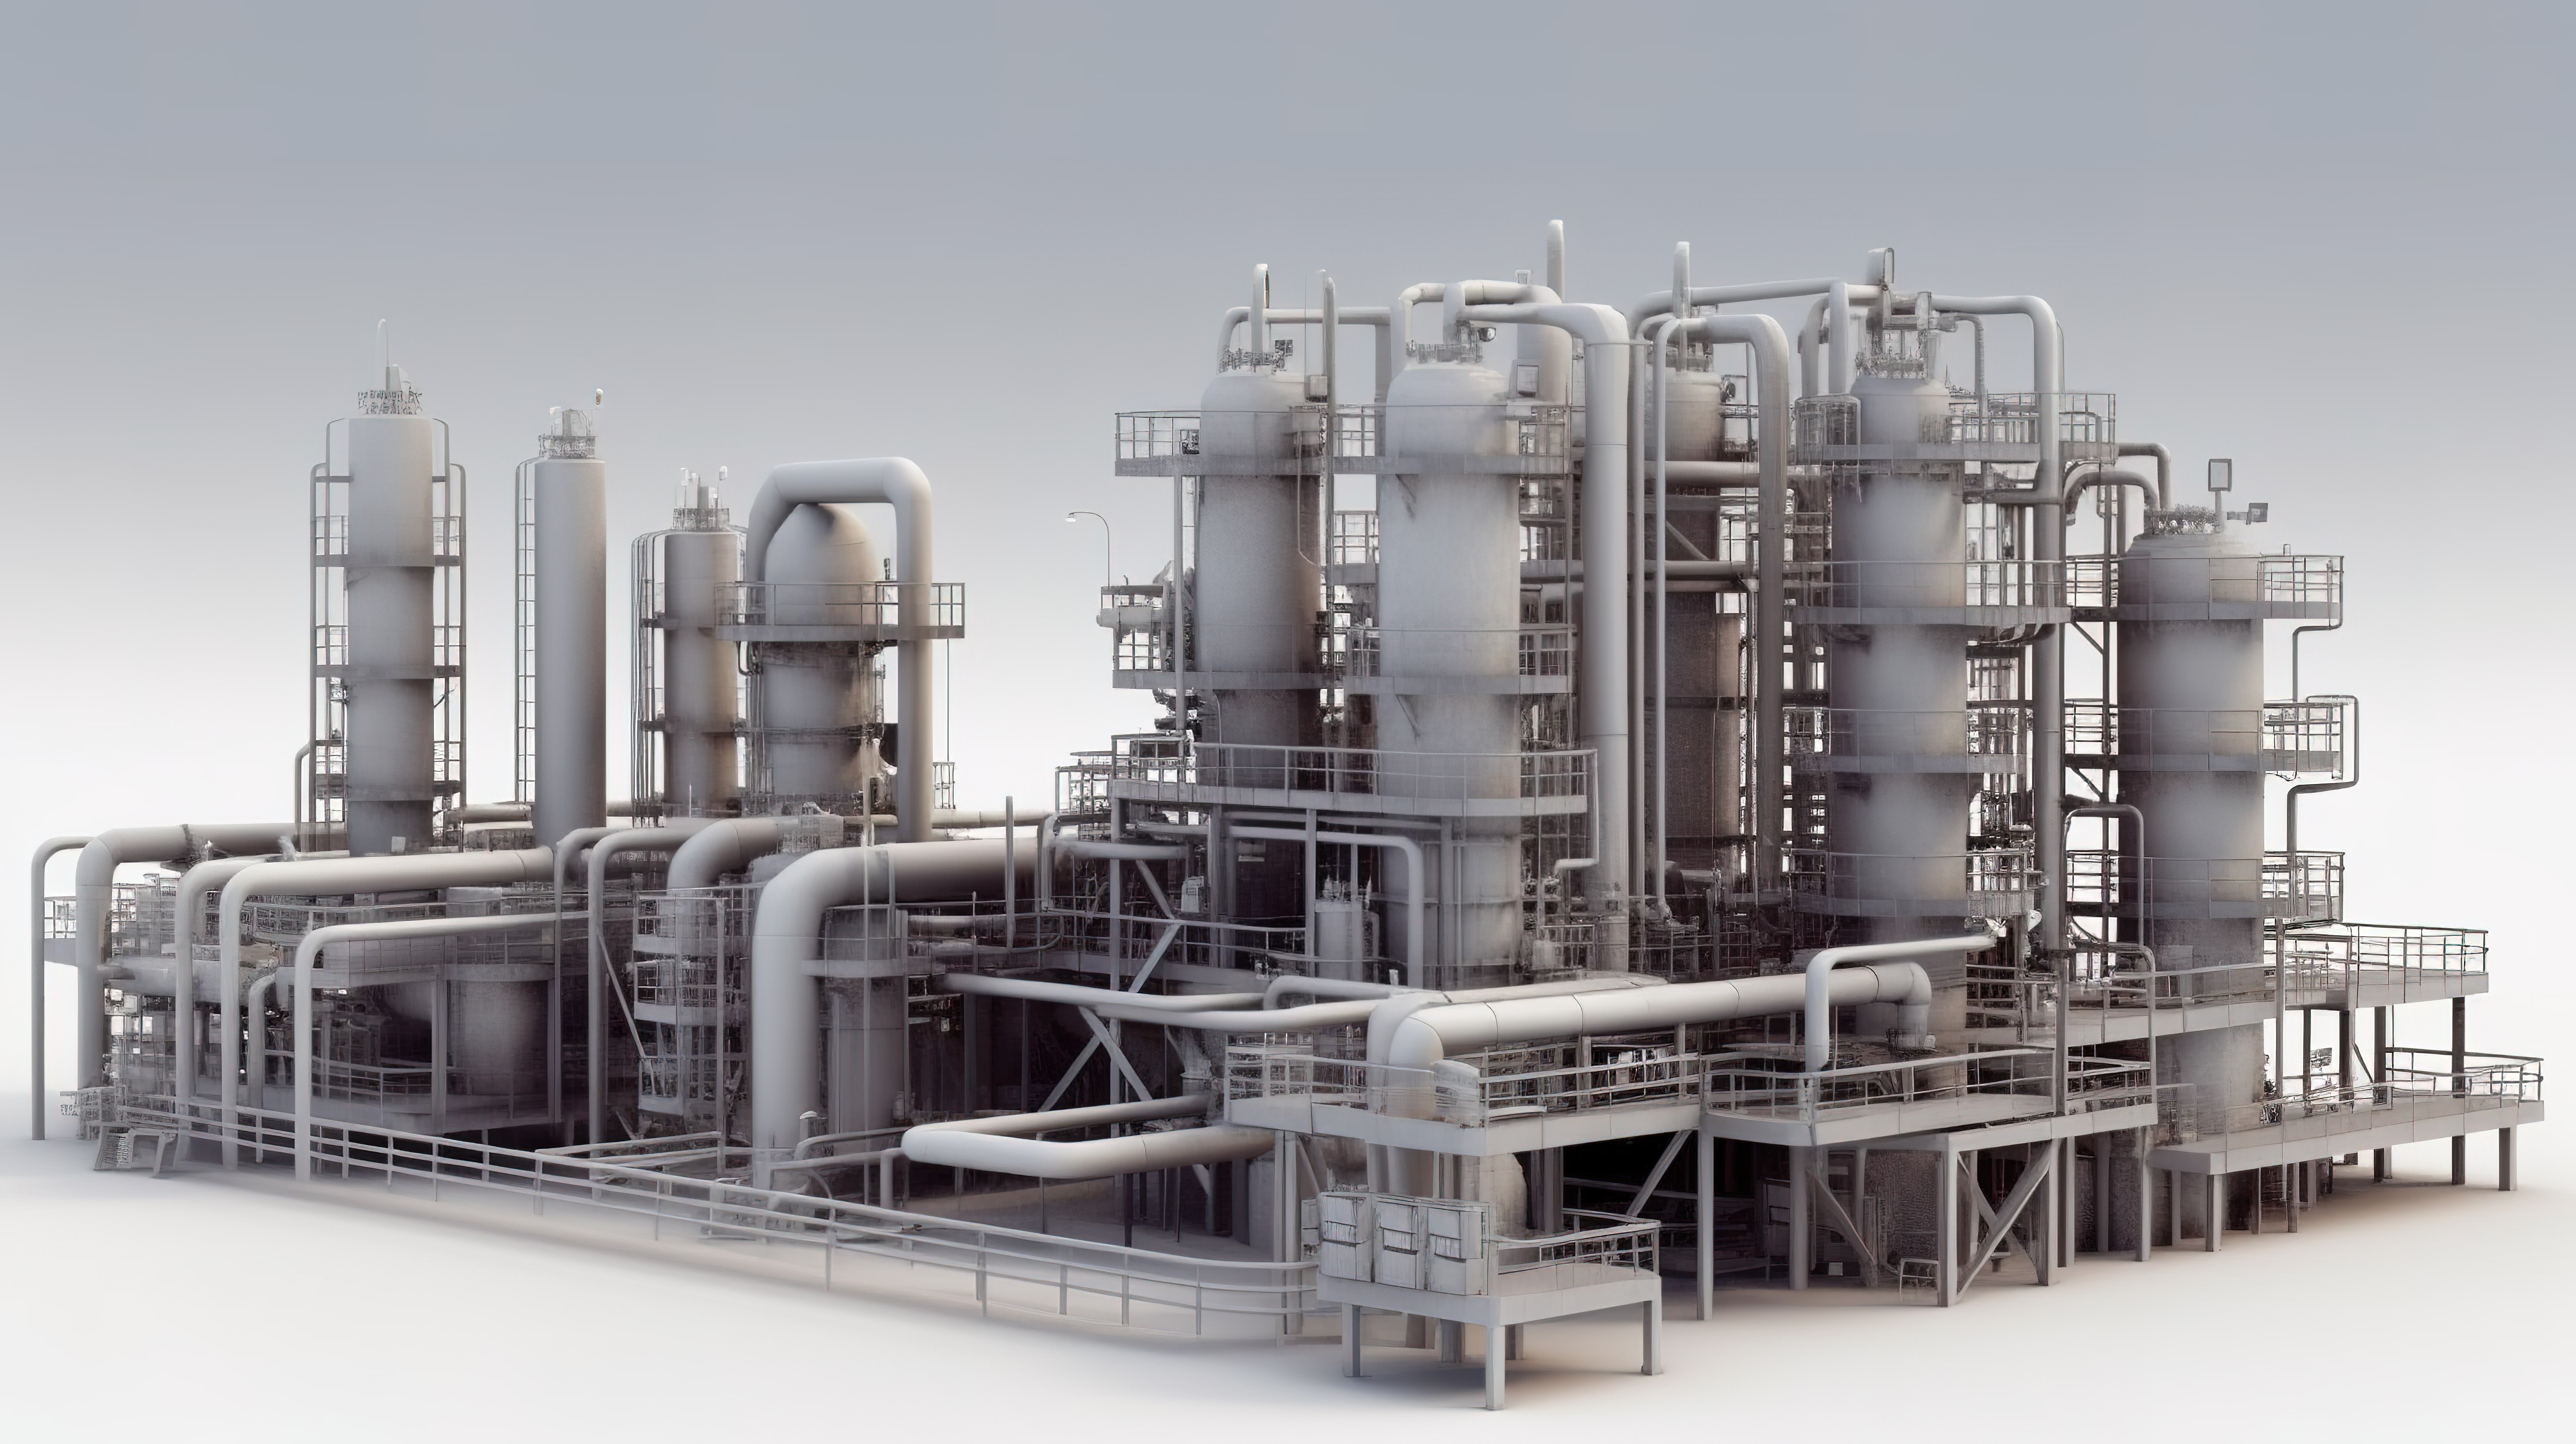 以 3d 形式呈现的石油工厂详细模型图片